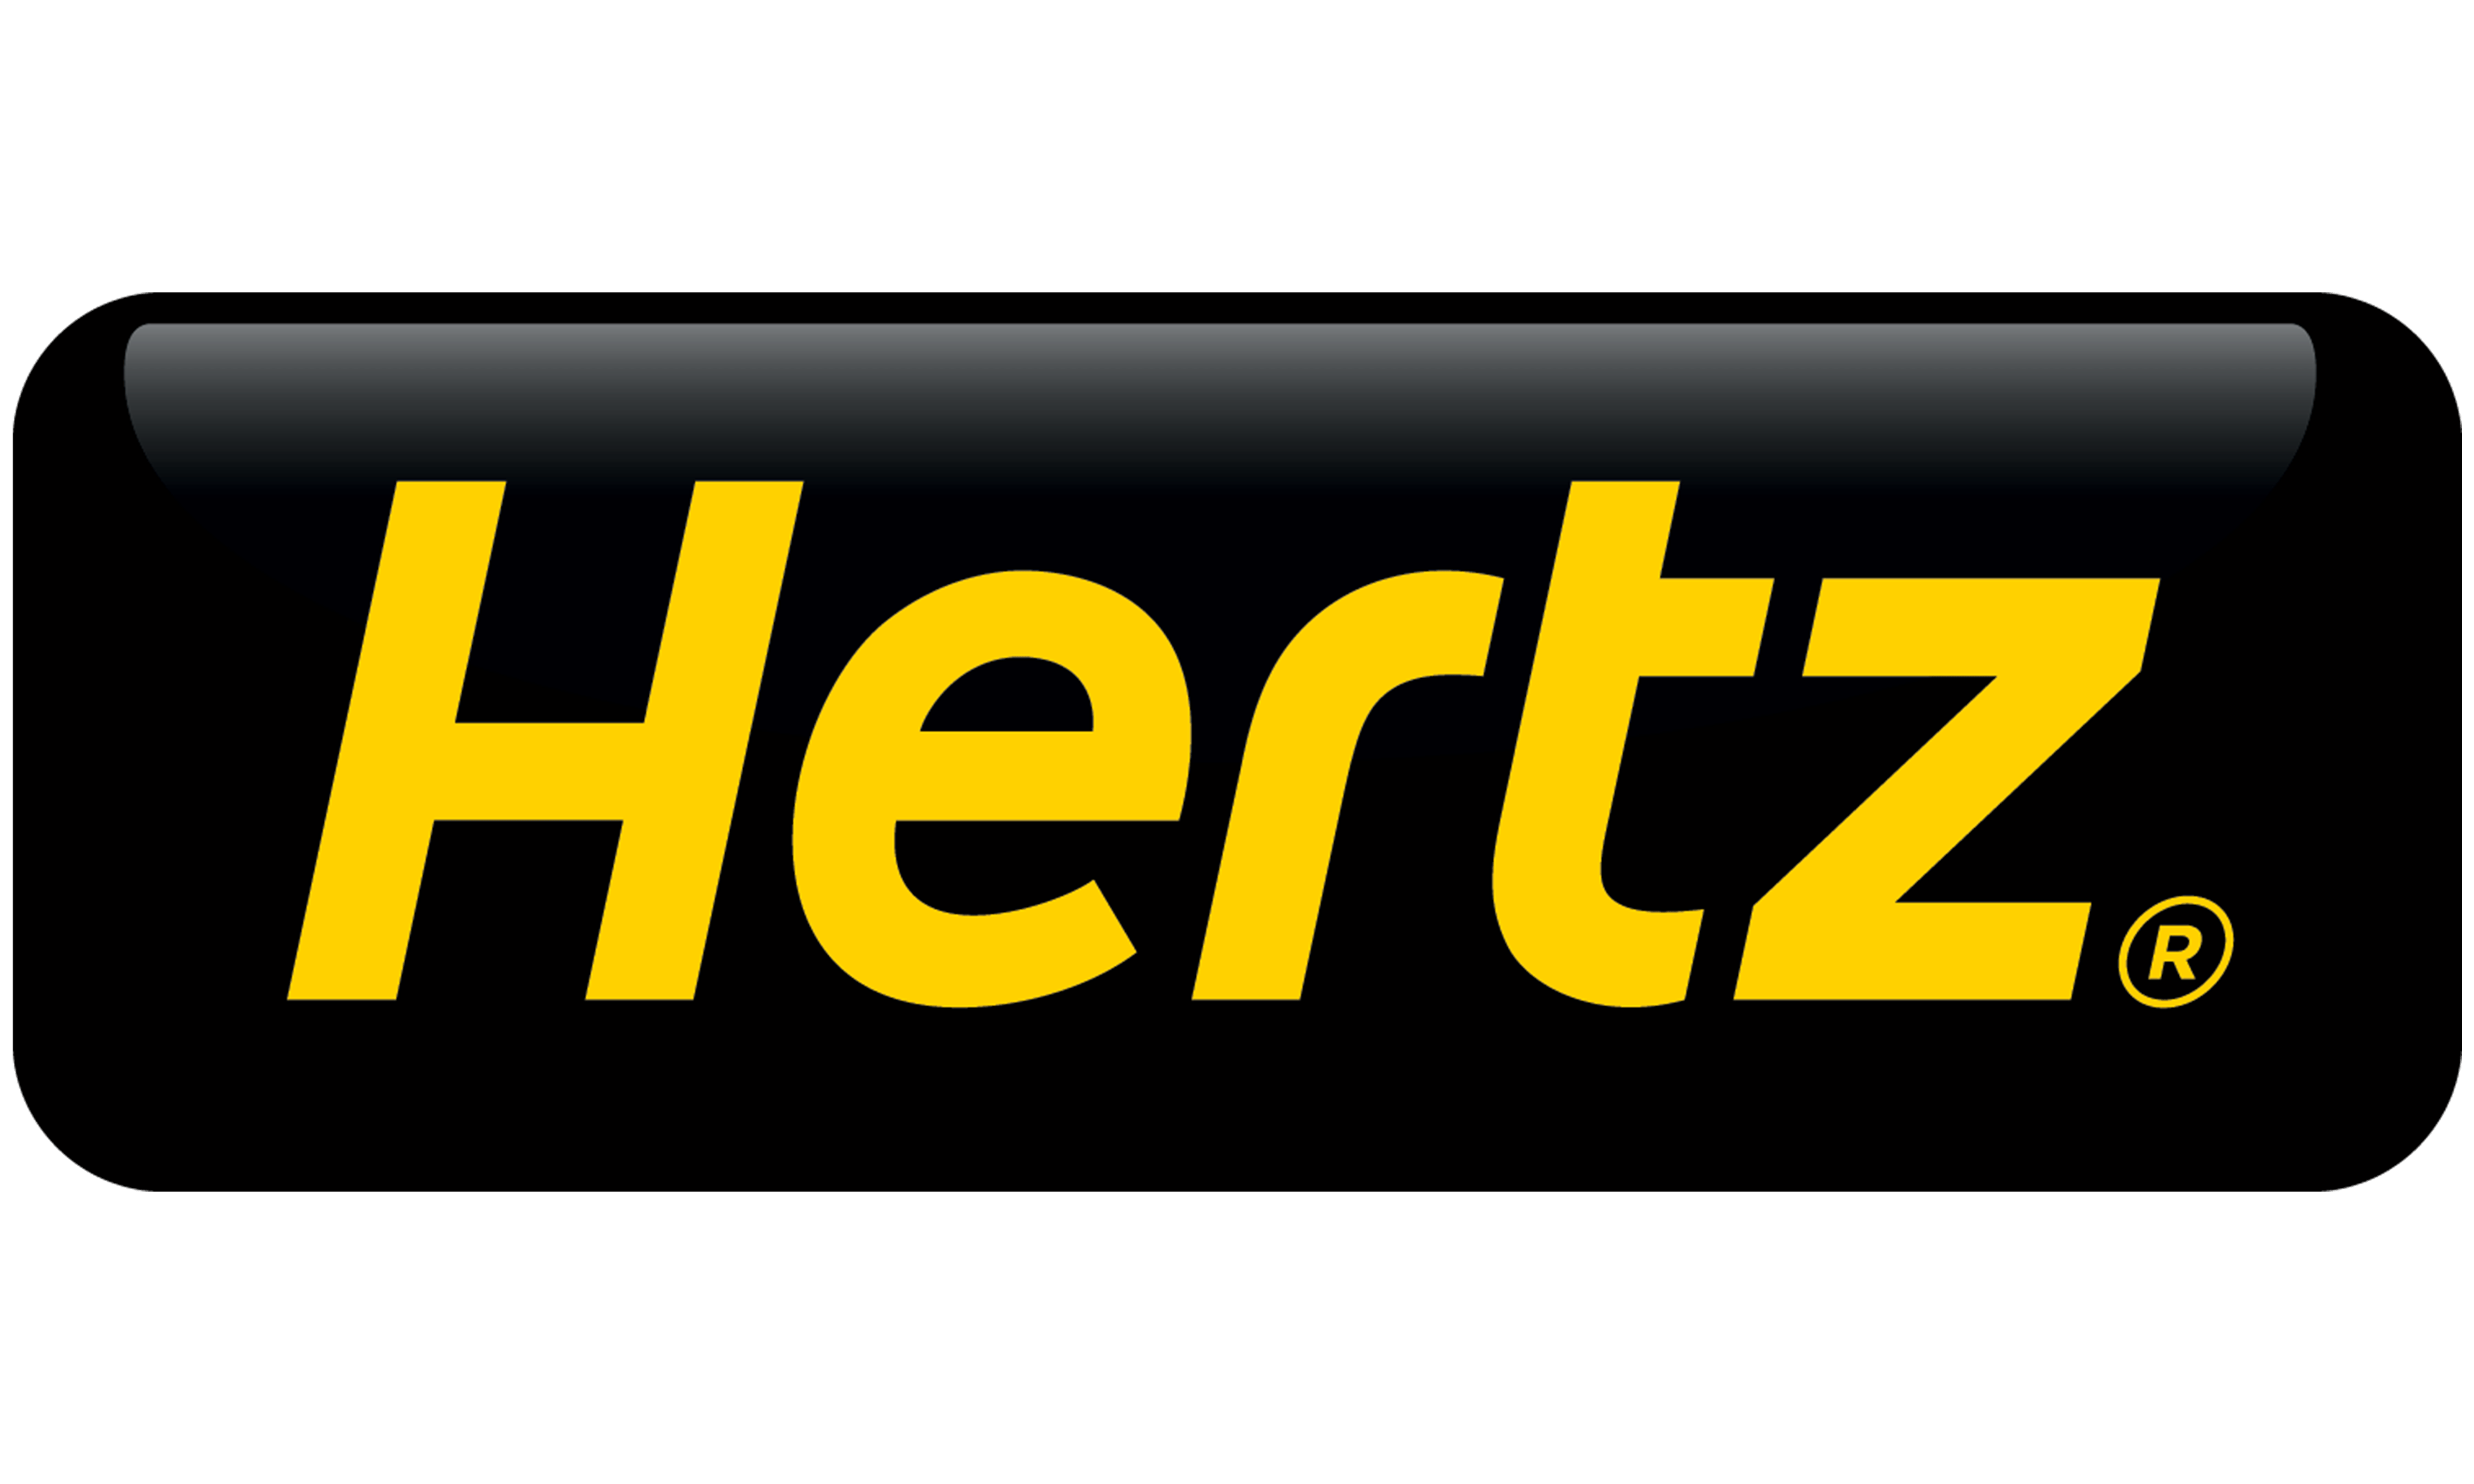 Hertz Logo - Hertz Global Holdings. $HTZ Stock. Shares Plummet 14% On First